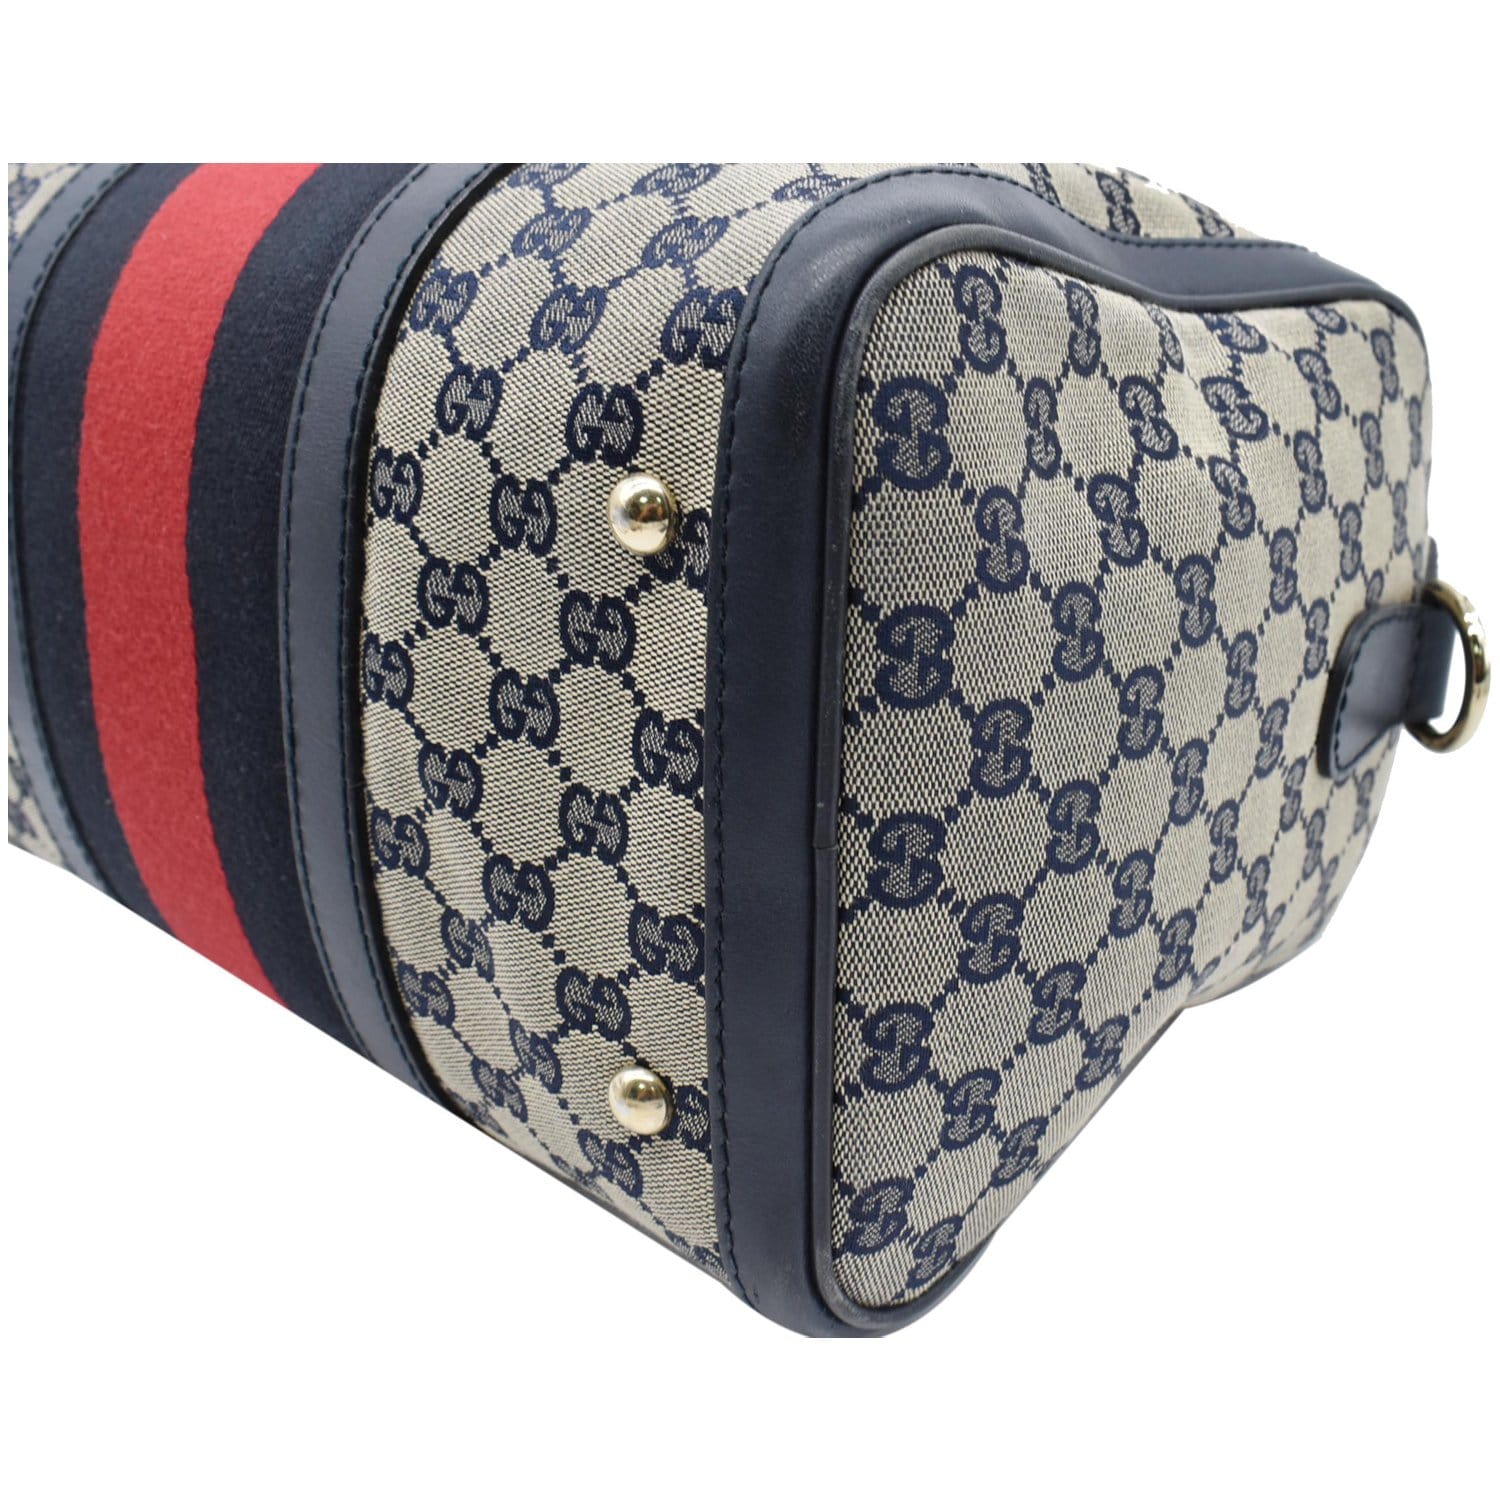 Vintage Gucci boston Web Bag for Sale in Shoreline, WA - OfferUp